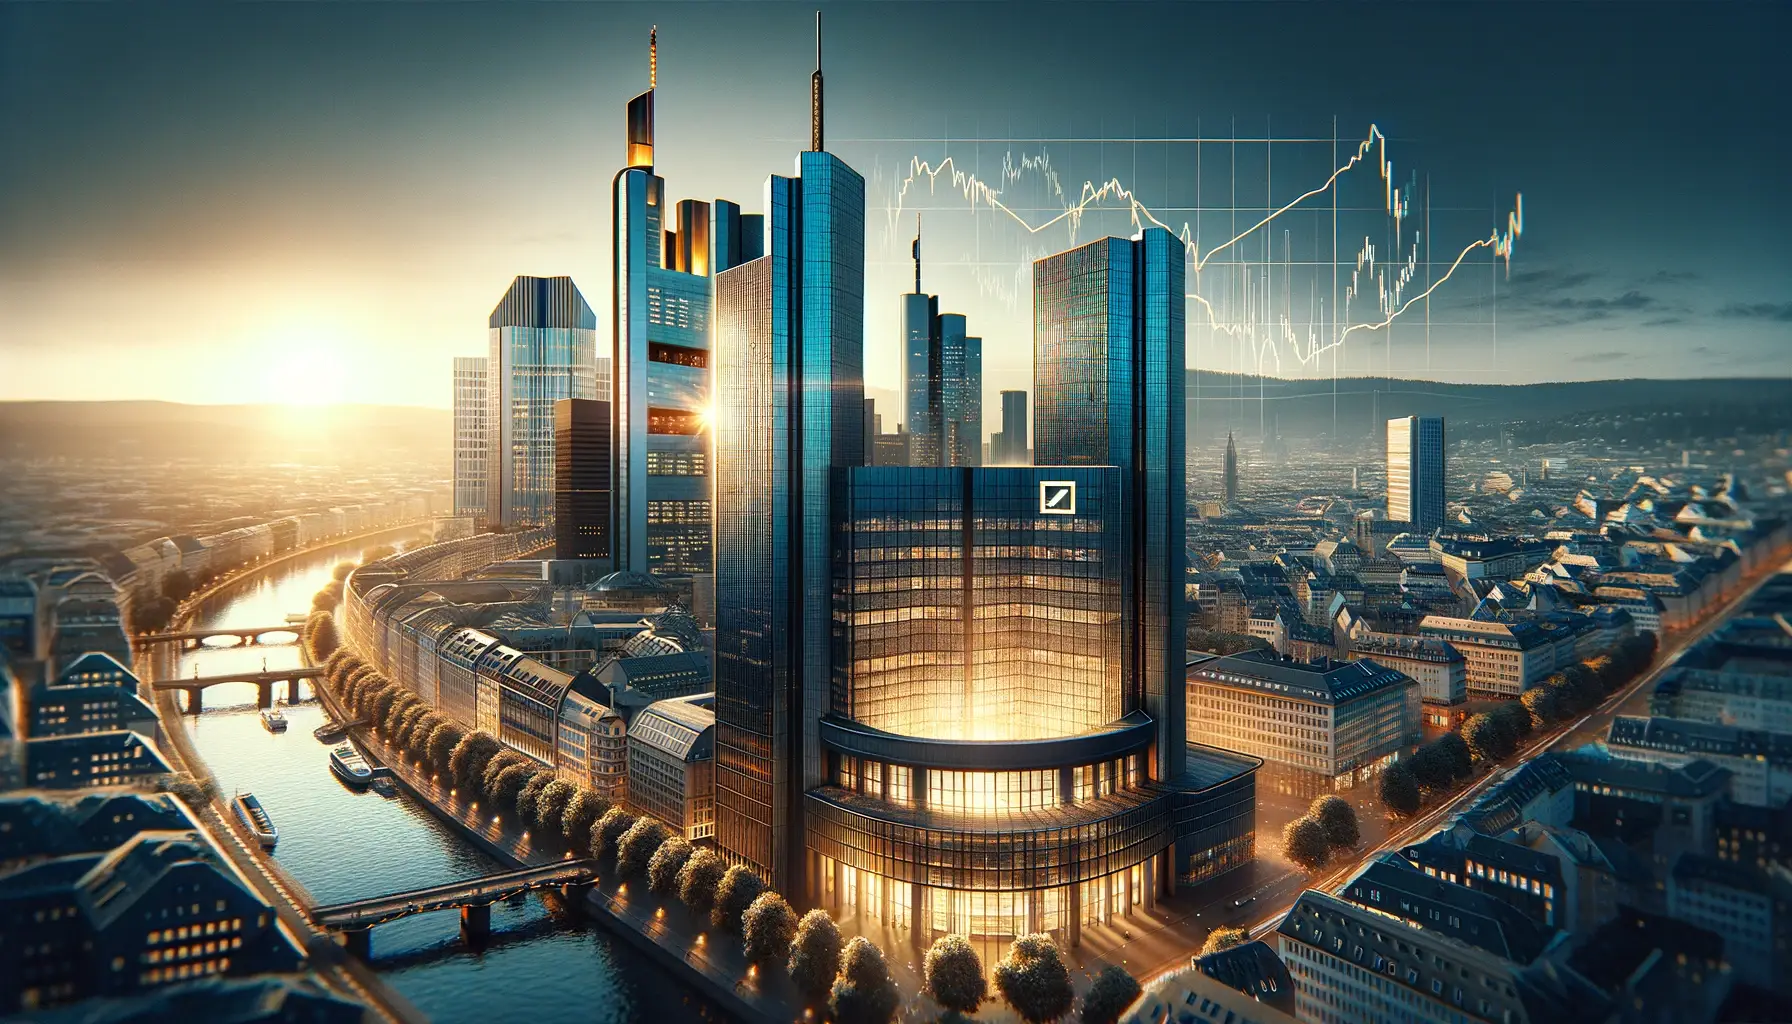 Veröffentliche ein Bild für einen Artikel über die Deutsche Bank-Aktie